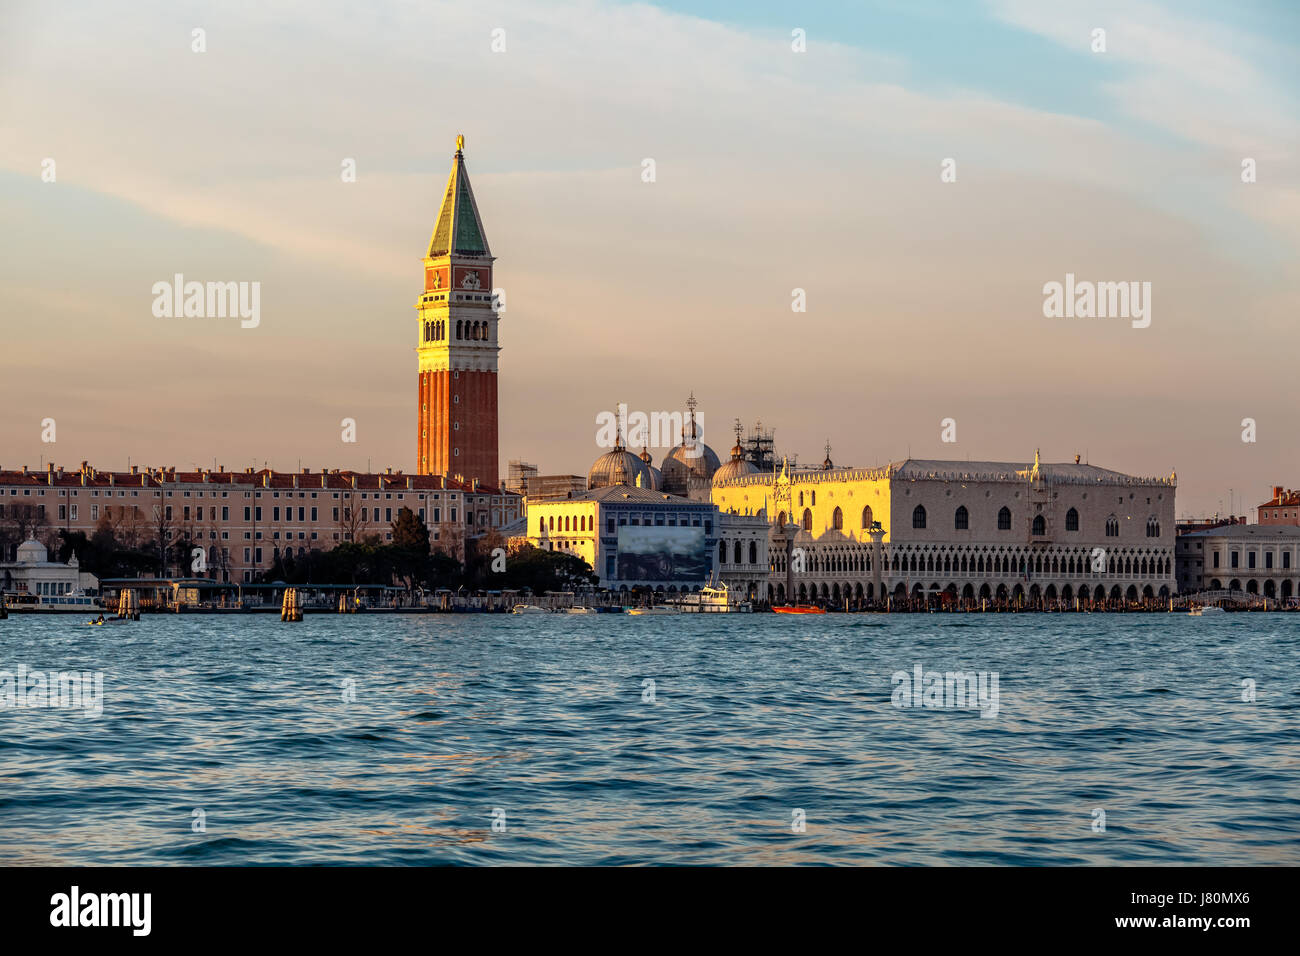 Vue sur le Palais des Doges, Campanella et cathédrale de San Marco le Grand Canal, Venise, Italie Banque D'Images